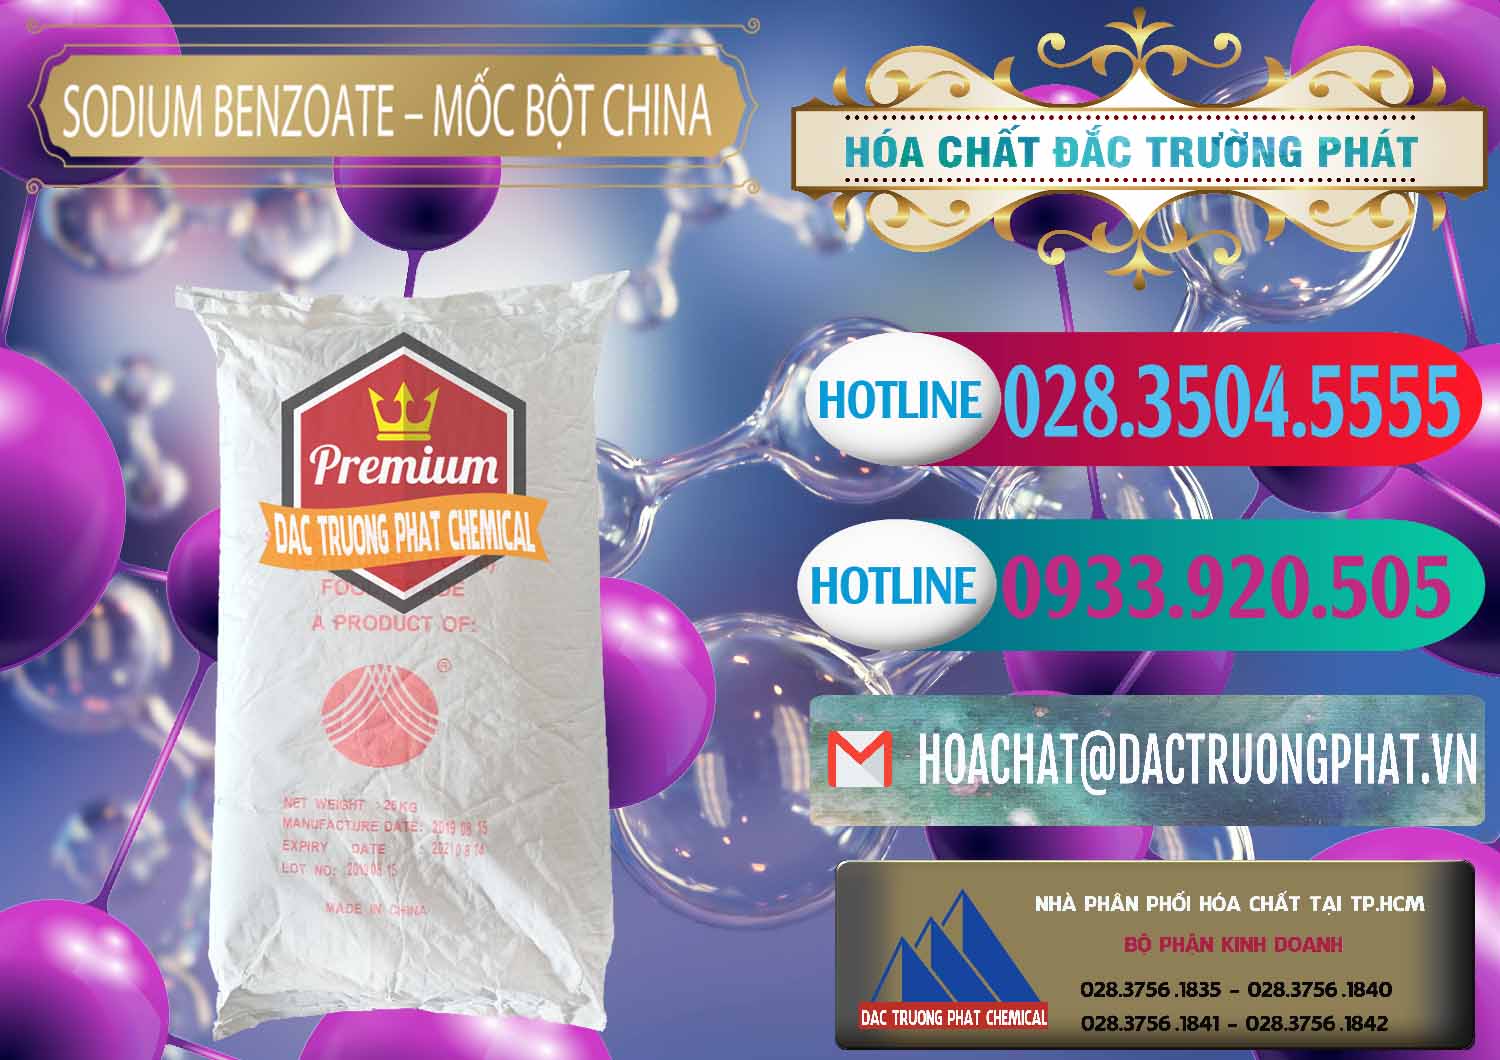 Chuyên bán ( cung cấp ) Sodium Benzoate - Mốc Bột Chữ Cam Food Grade Trung Quốc China - 0135 - Cty chuyên cung cấp - kinh doanh hóa chất tại TP.HCM - truongphat.vn